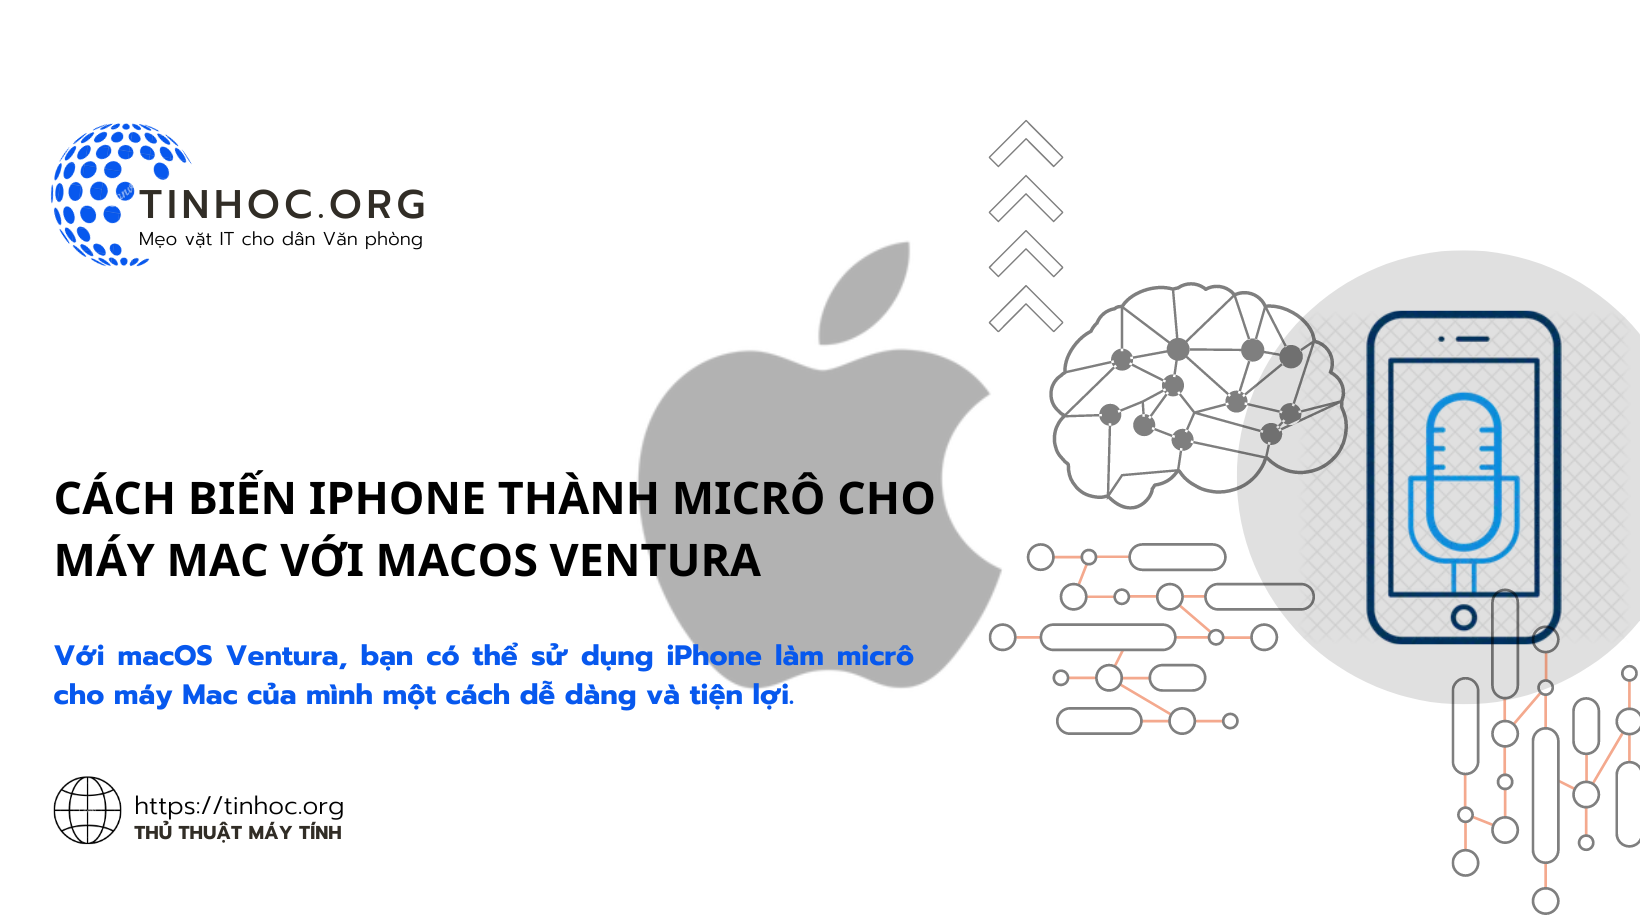 Với macOS Ventura, bạn có thể sử dụng iPhone làm micrô cho máy Mac của mình một cách dễ dàng và tiện lợi.